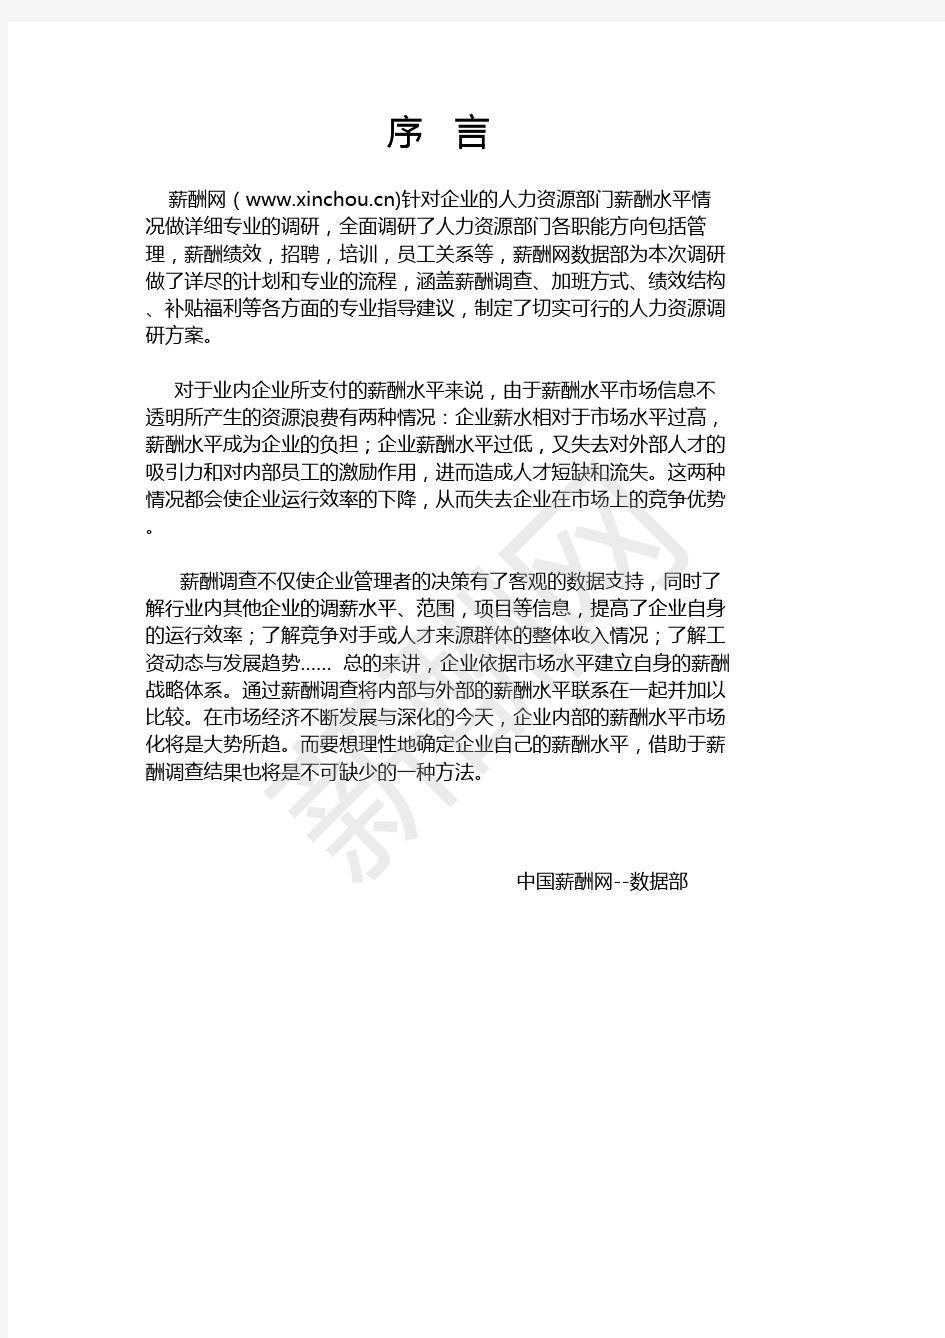 薪酬报告系列-2020杭州地区人力资源部门薪酬调查报告